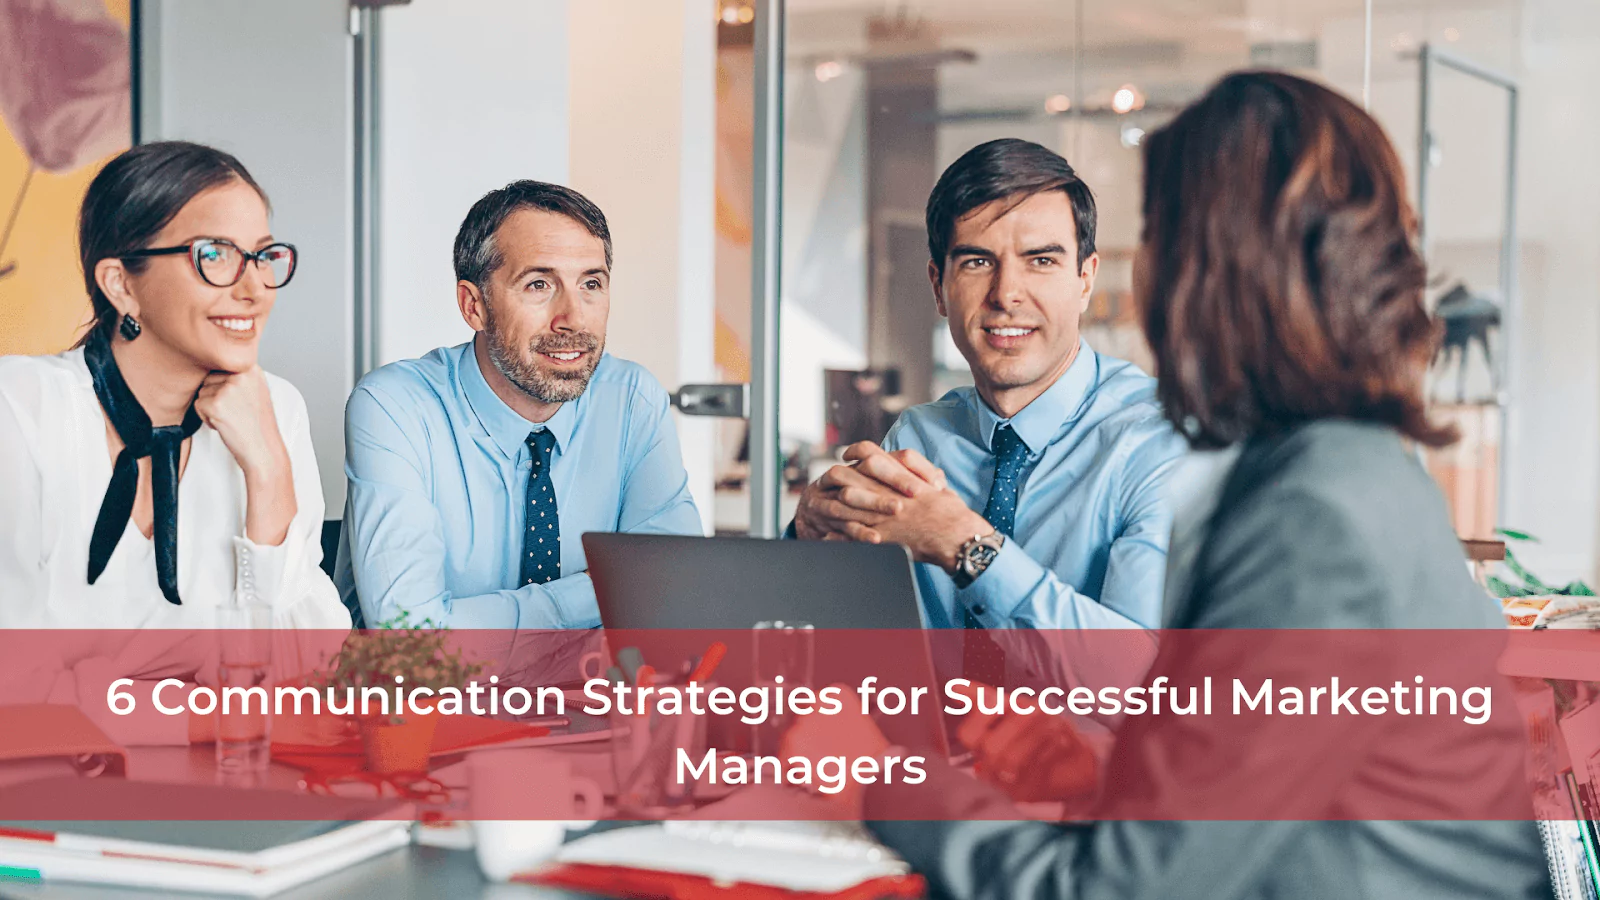 成功营销经理的 6 个沟通策略